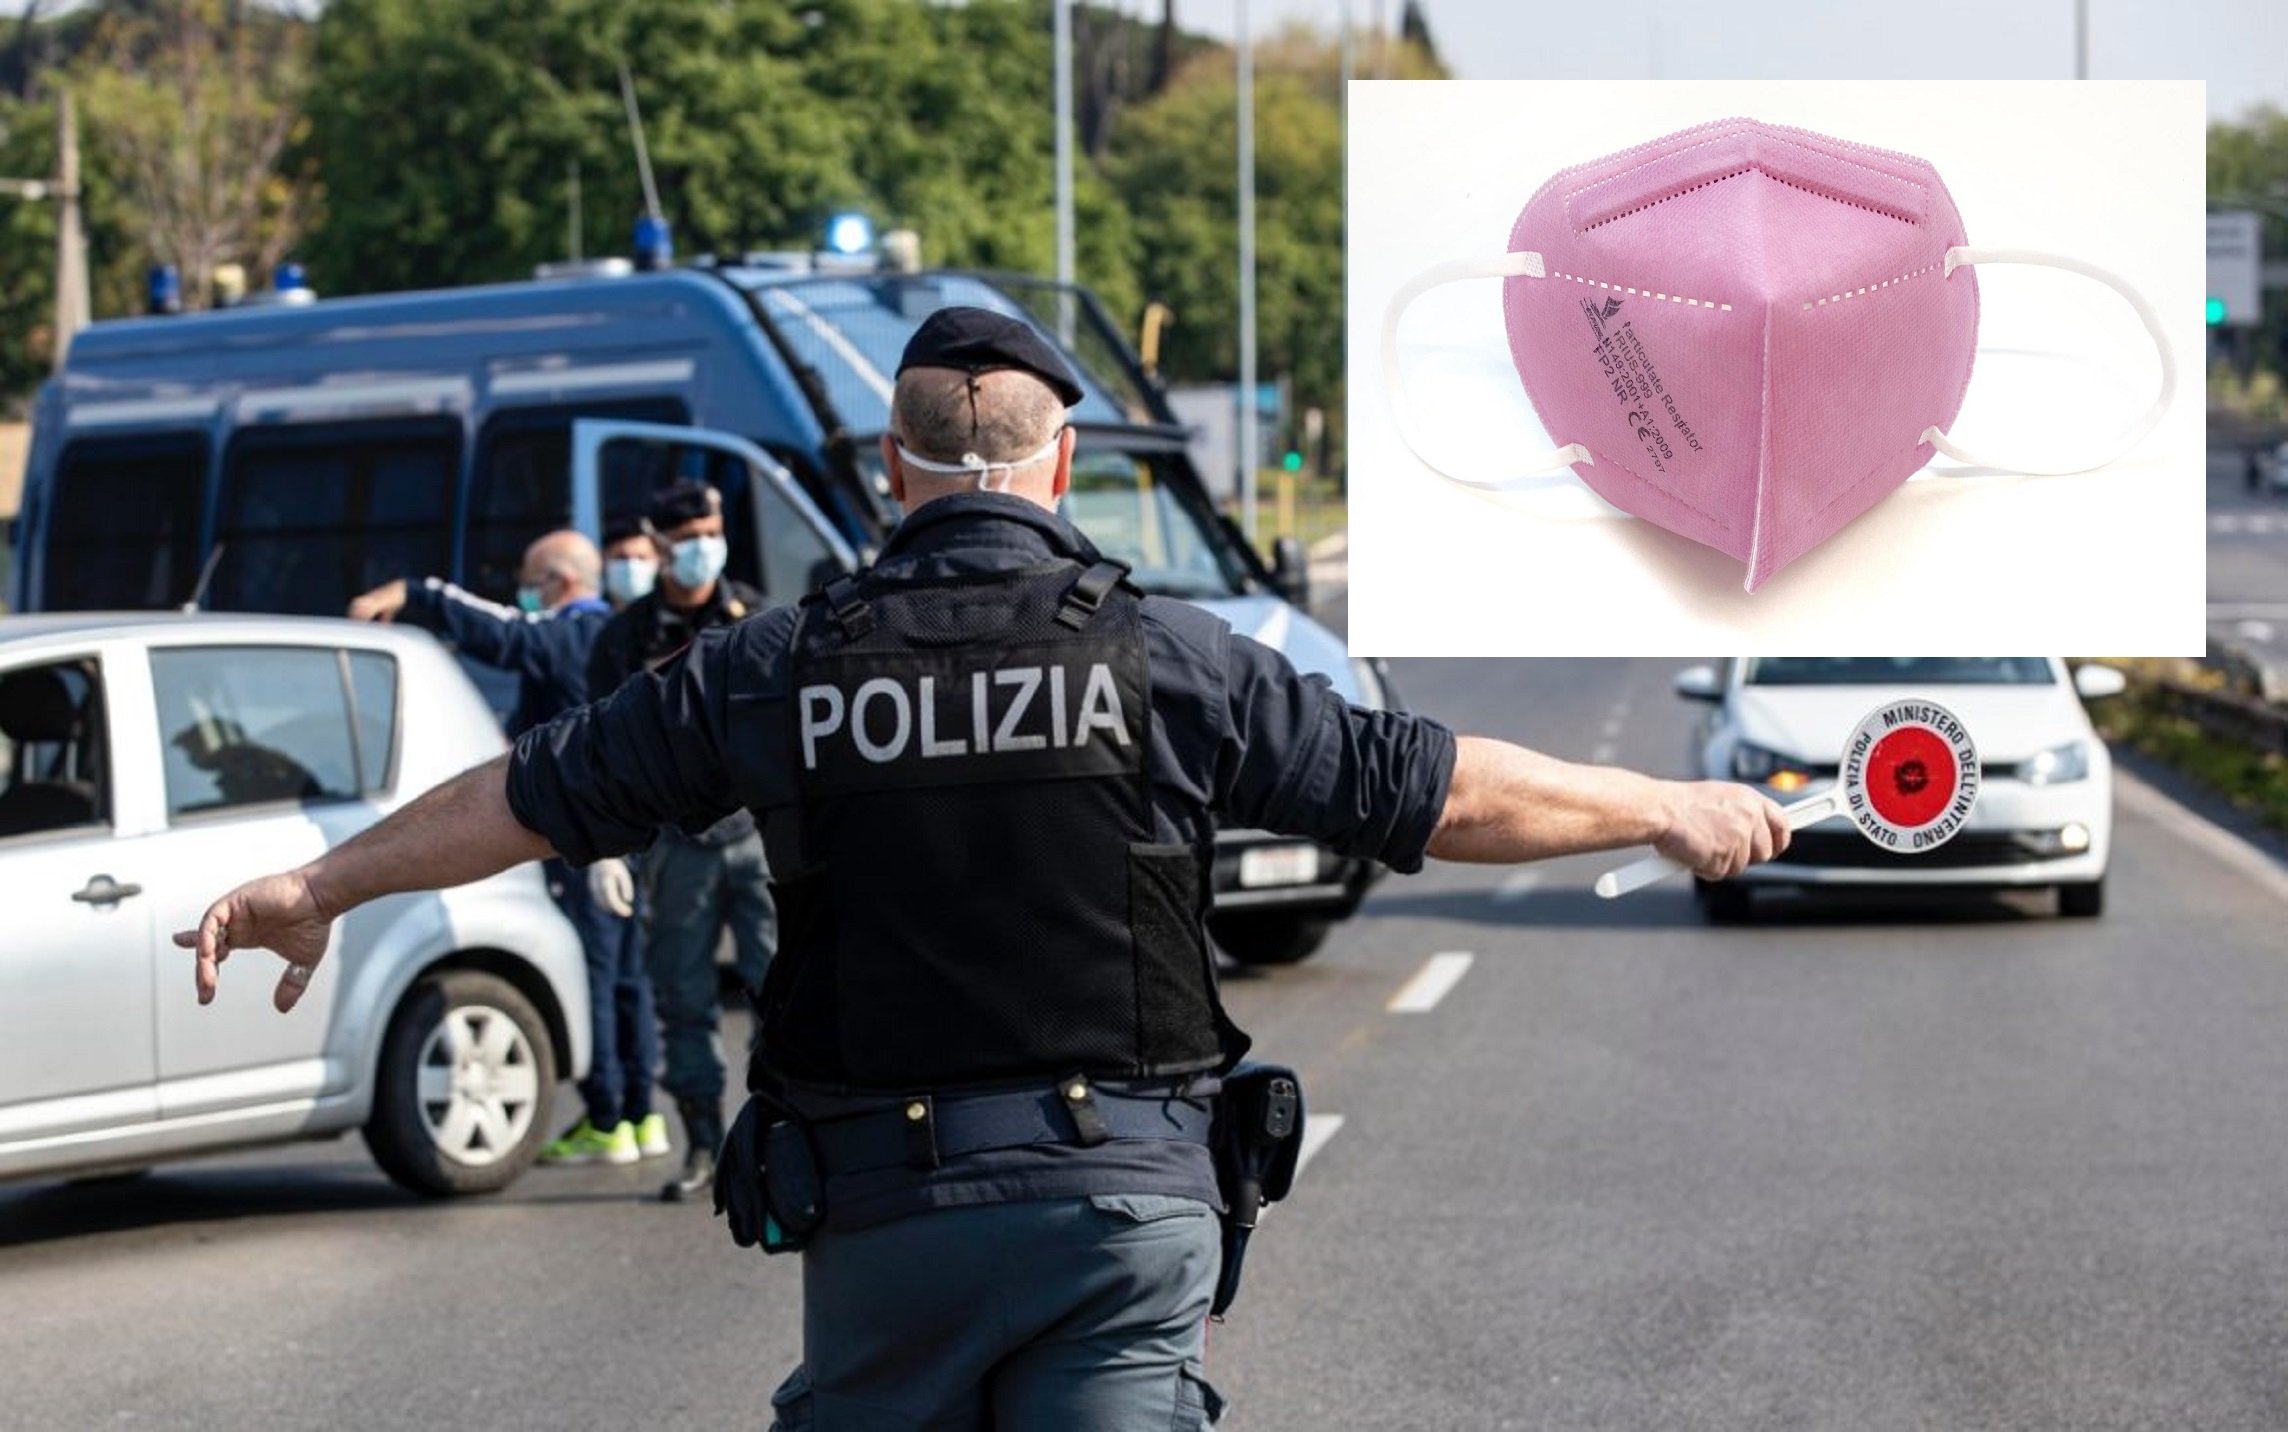 polizia mascherine rosa